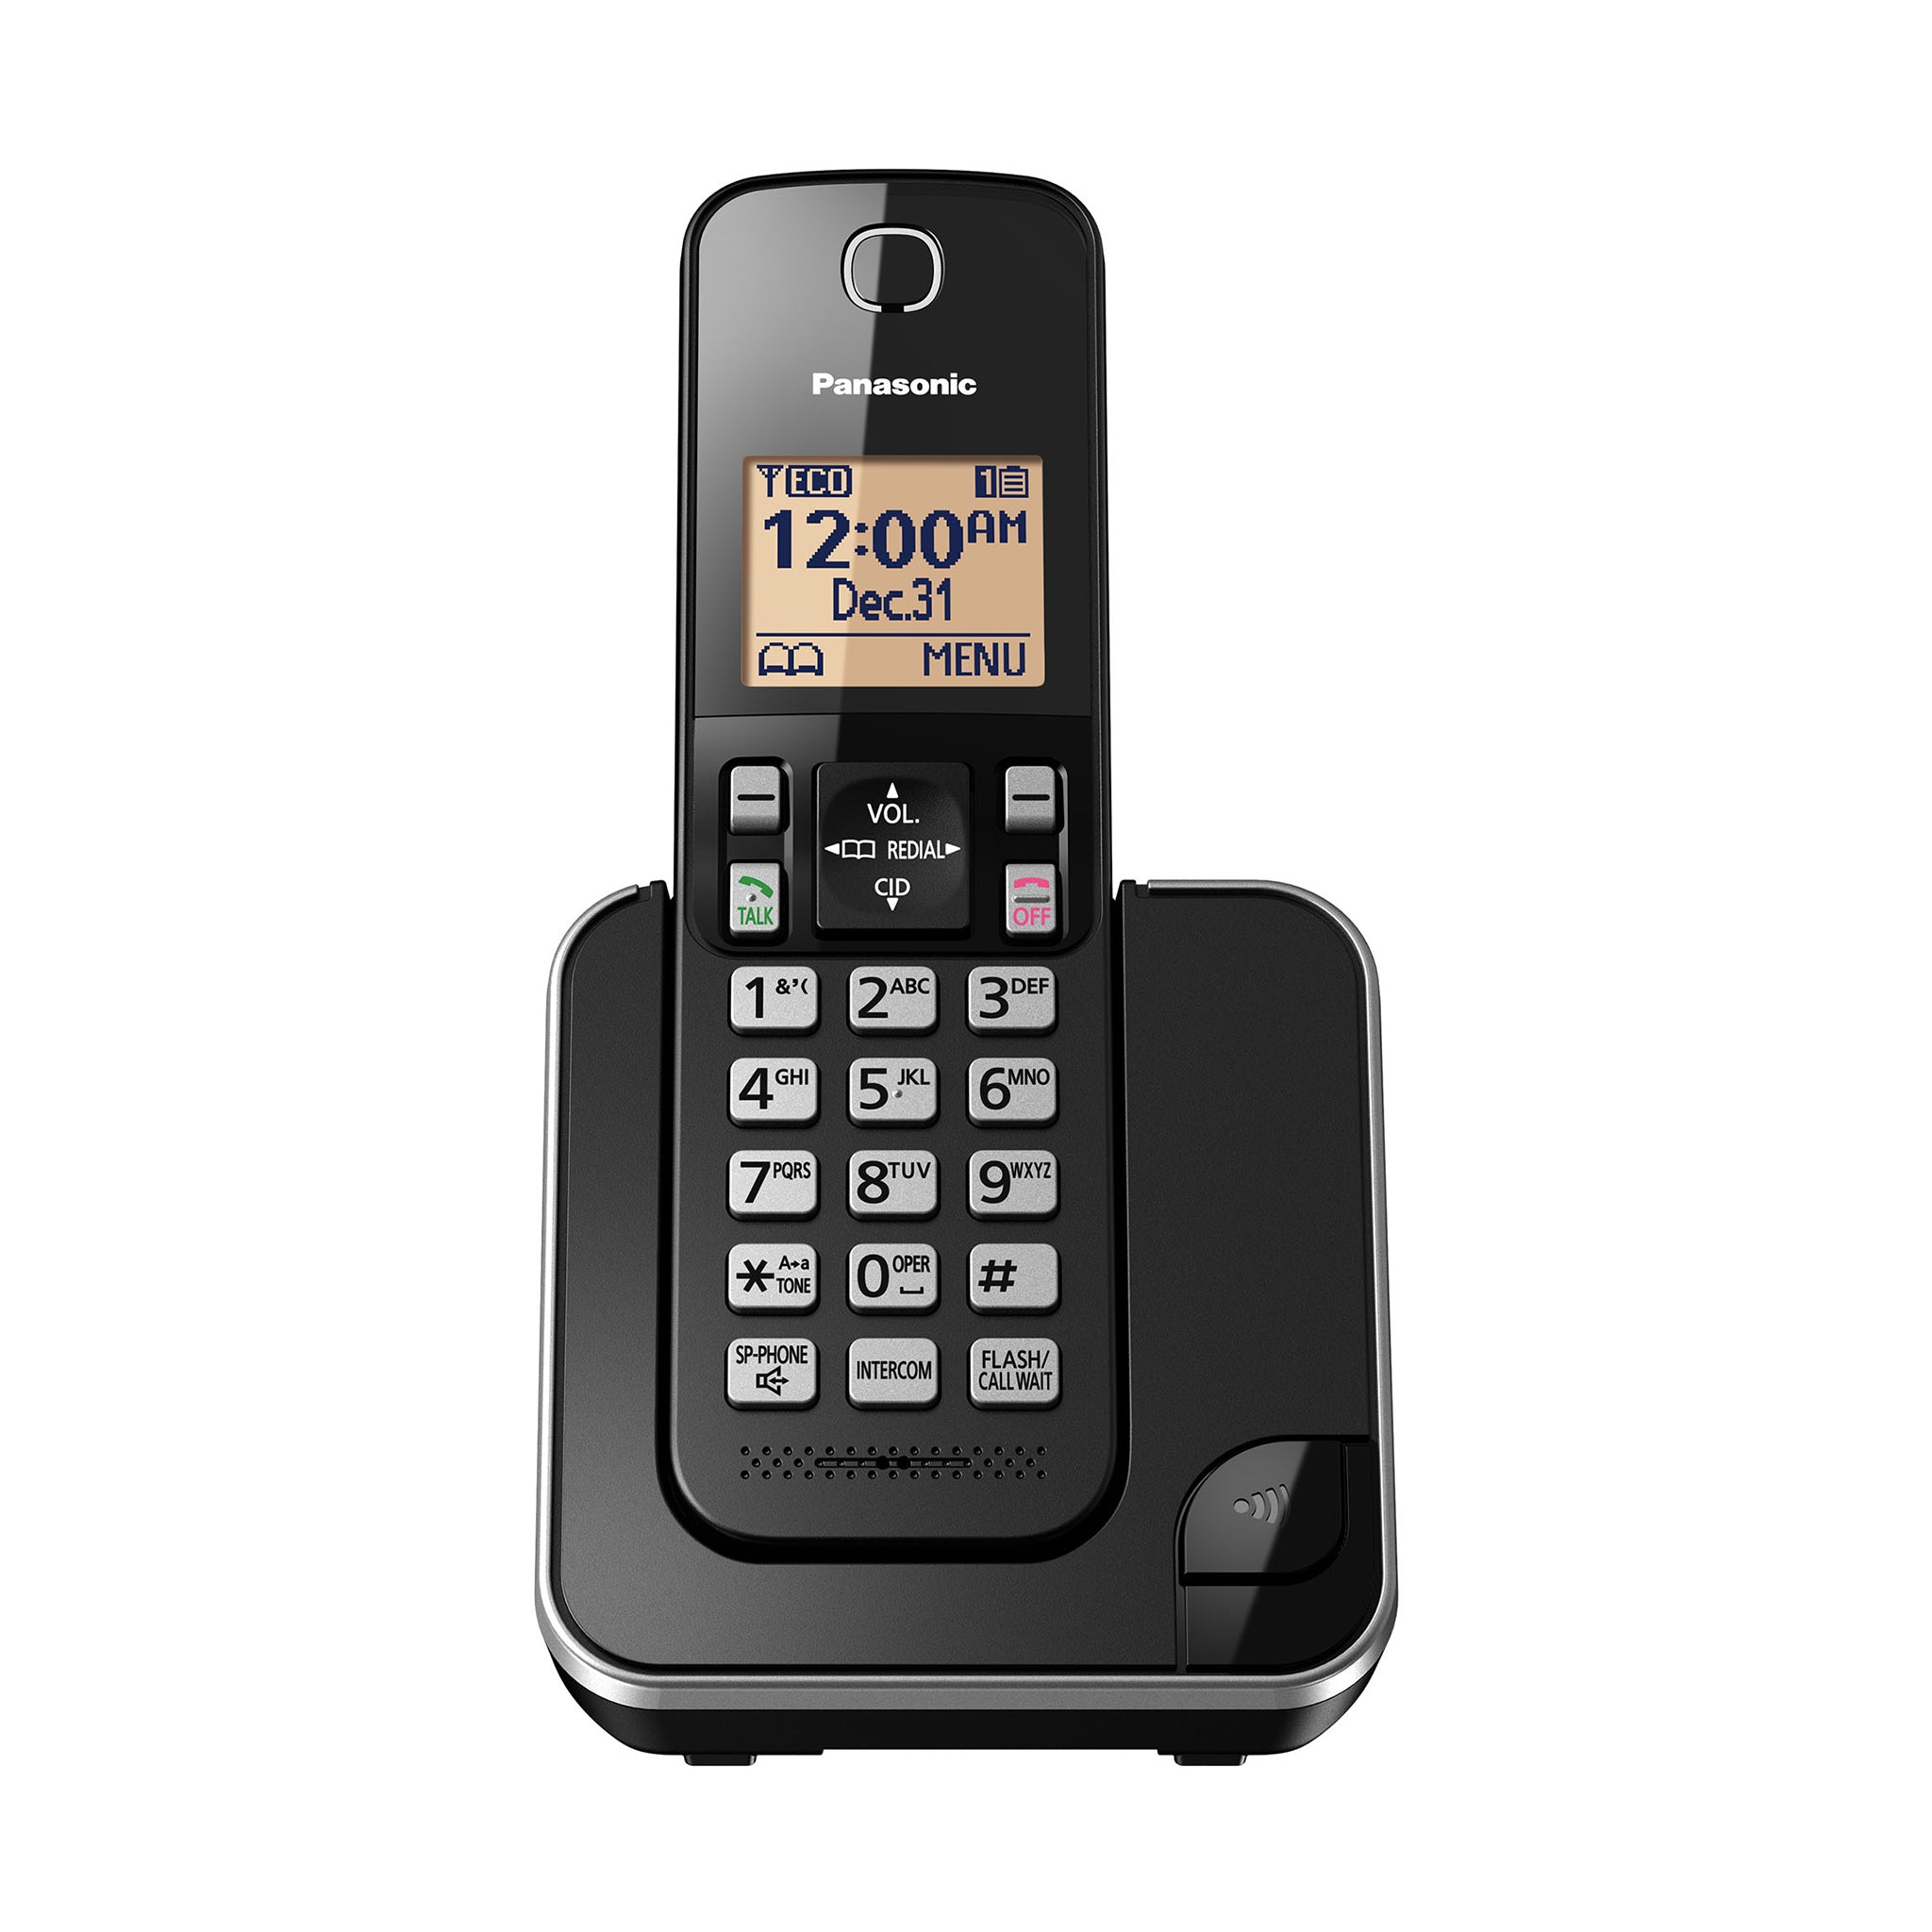  Panasonic KX-TGC362B teléfono fijo con banda de frecuencia  Dect_6.0, 2 unidades : Todo lo demás